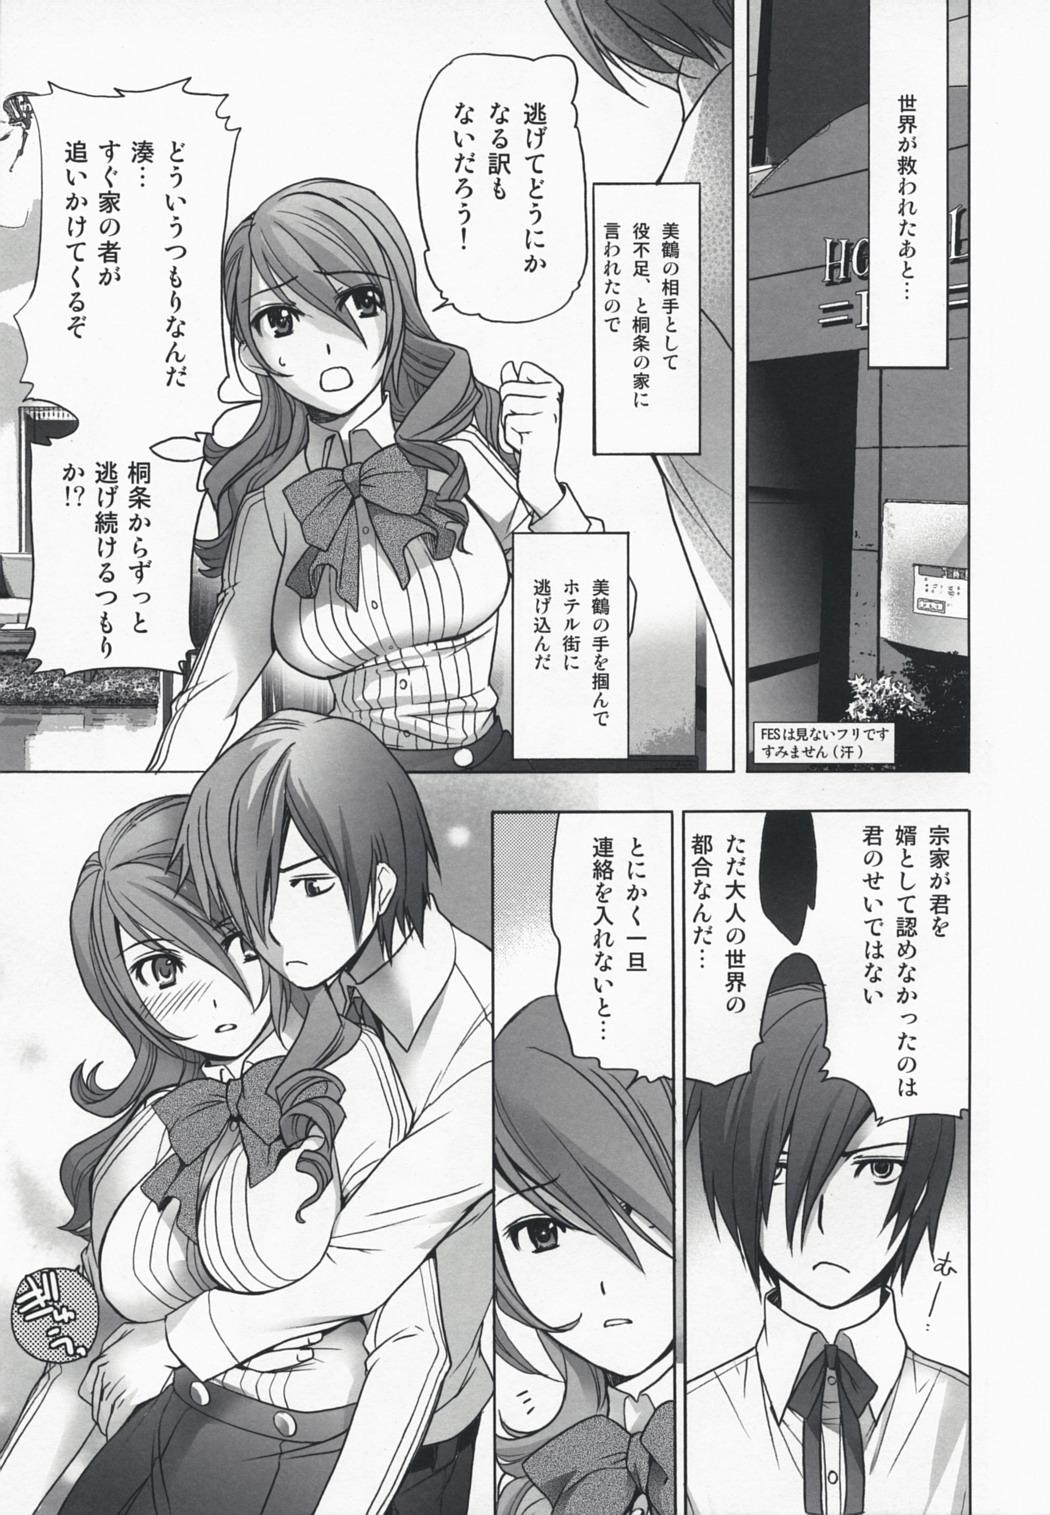 4some Kinjirareta Asobi - Persona 3 Dance - Page 6